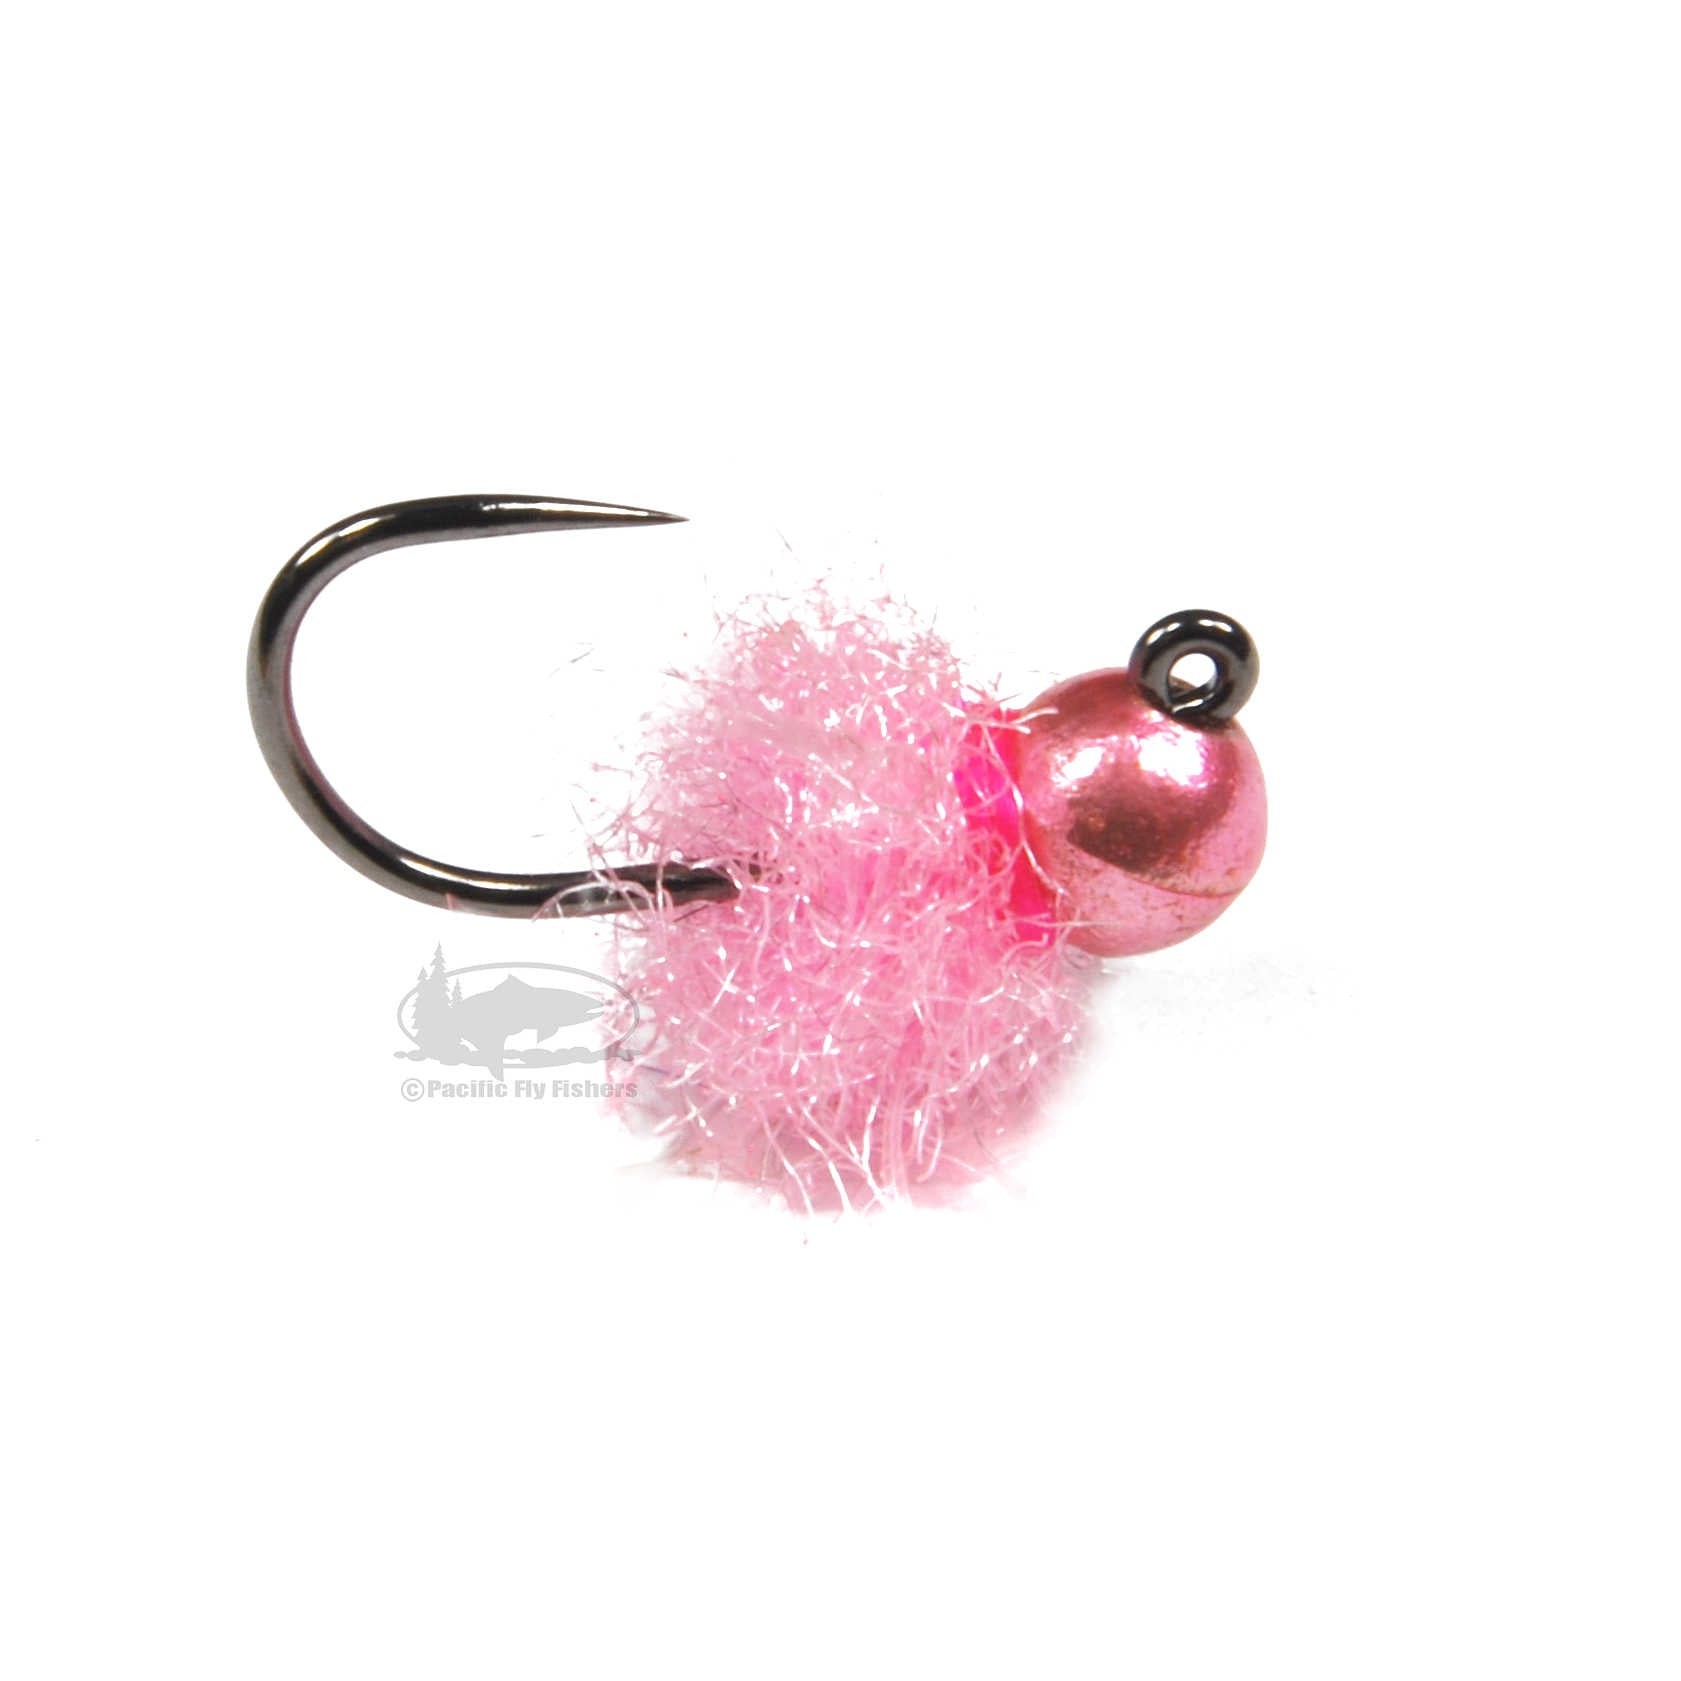 https://pacificflyfishers.com/cdn/shop/products/slush-egg-pink.jpg?v=1681950259